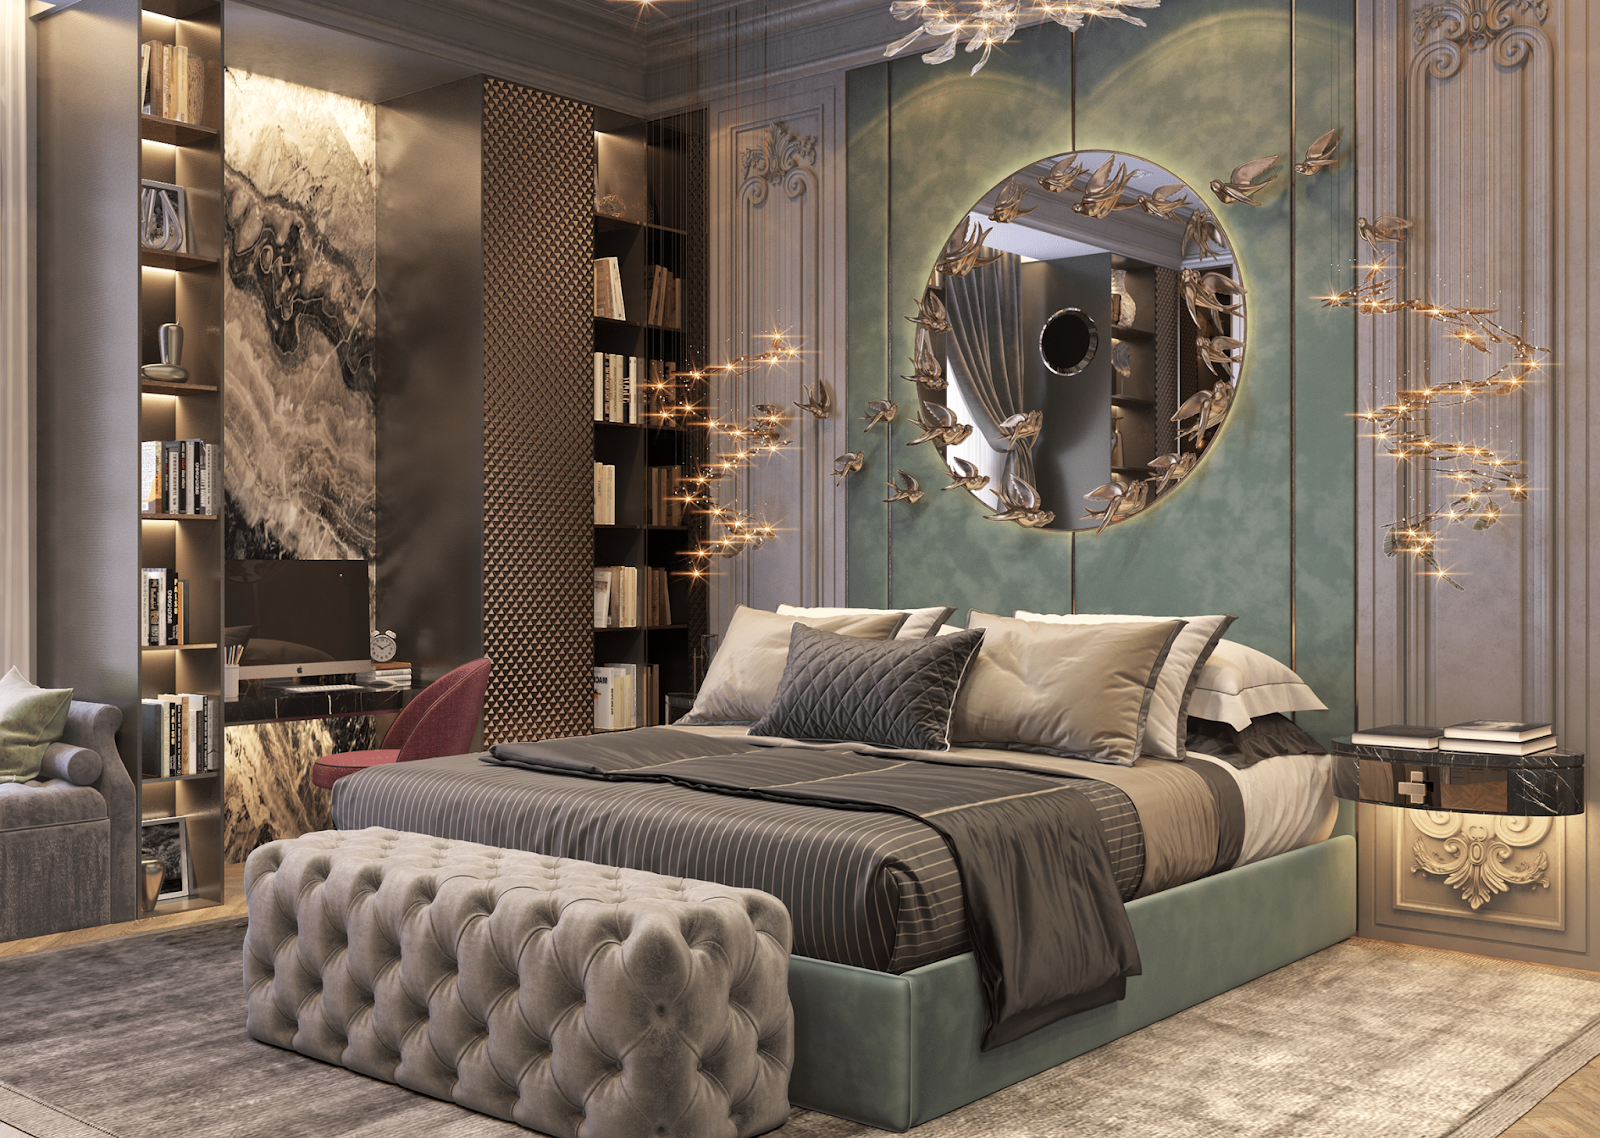 Mẫu 28: Trang trí phòng ngủ vợ chồng với các món đồ nội thất mang phong cách cổ trang độc lạ và ấn tượng. 